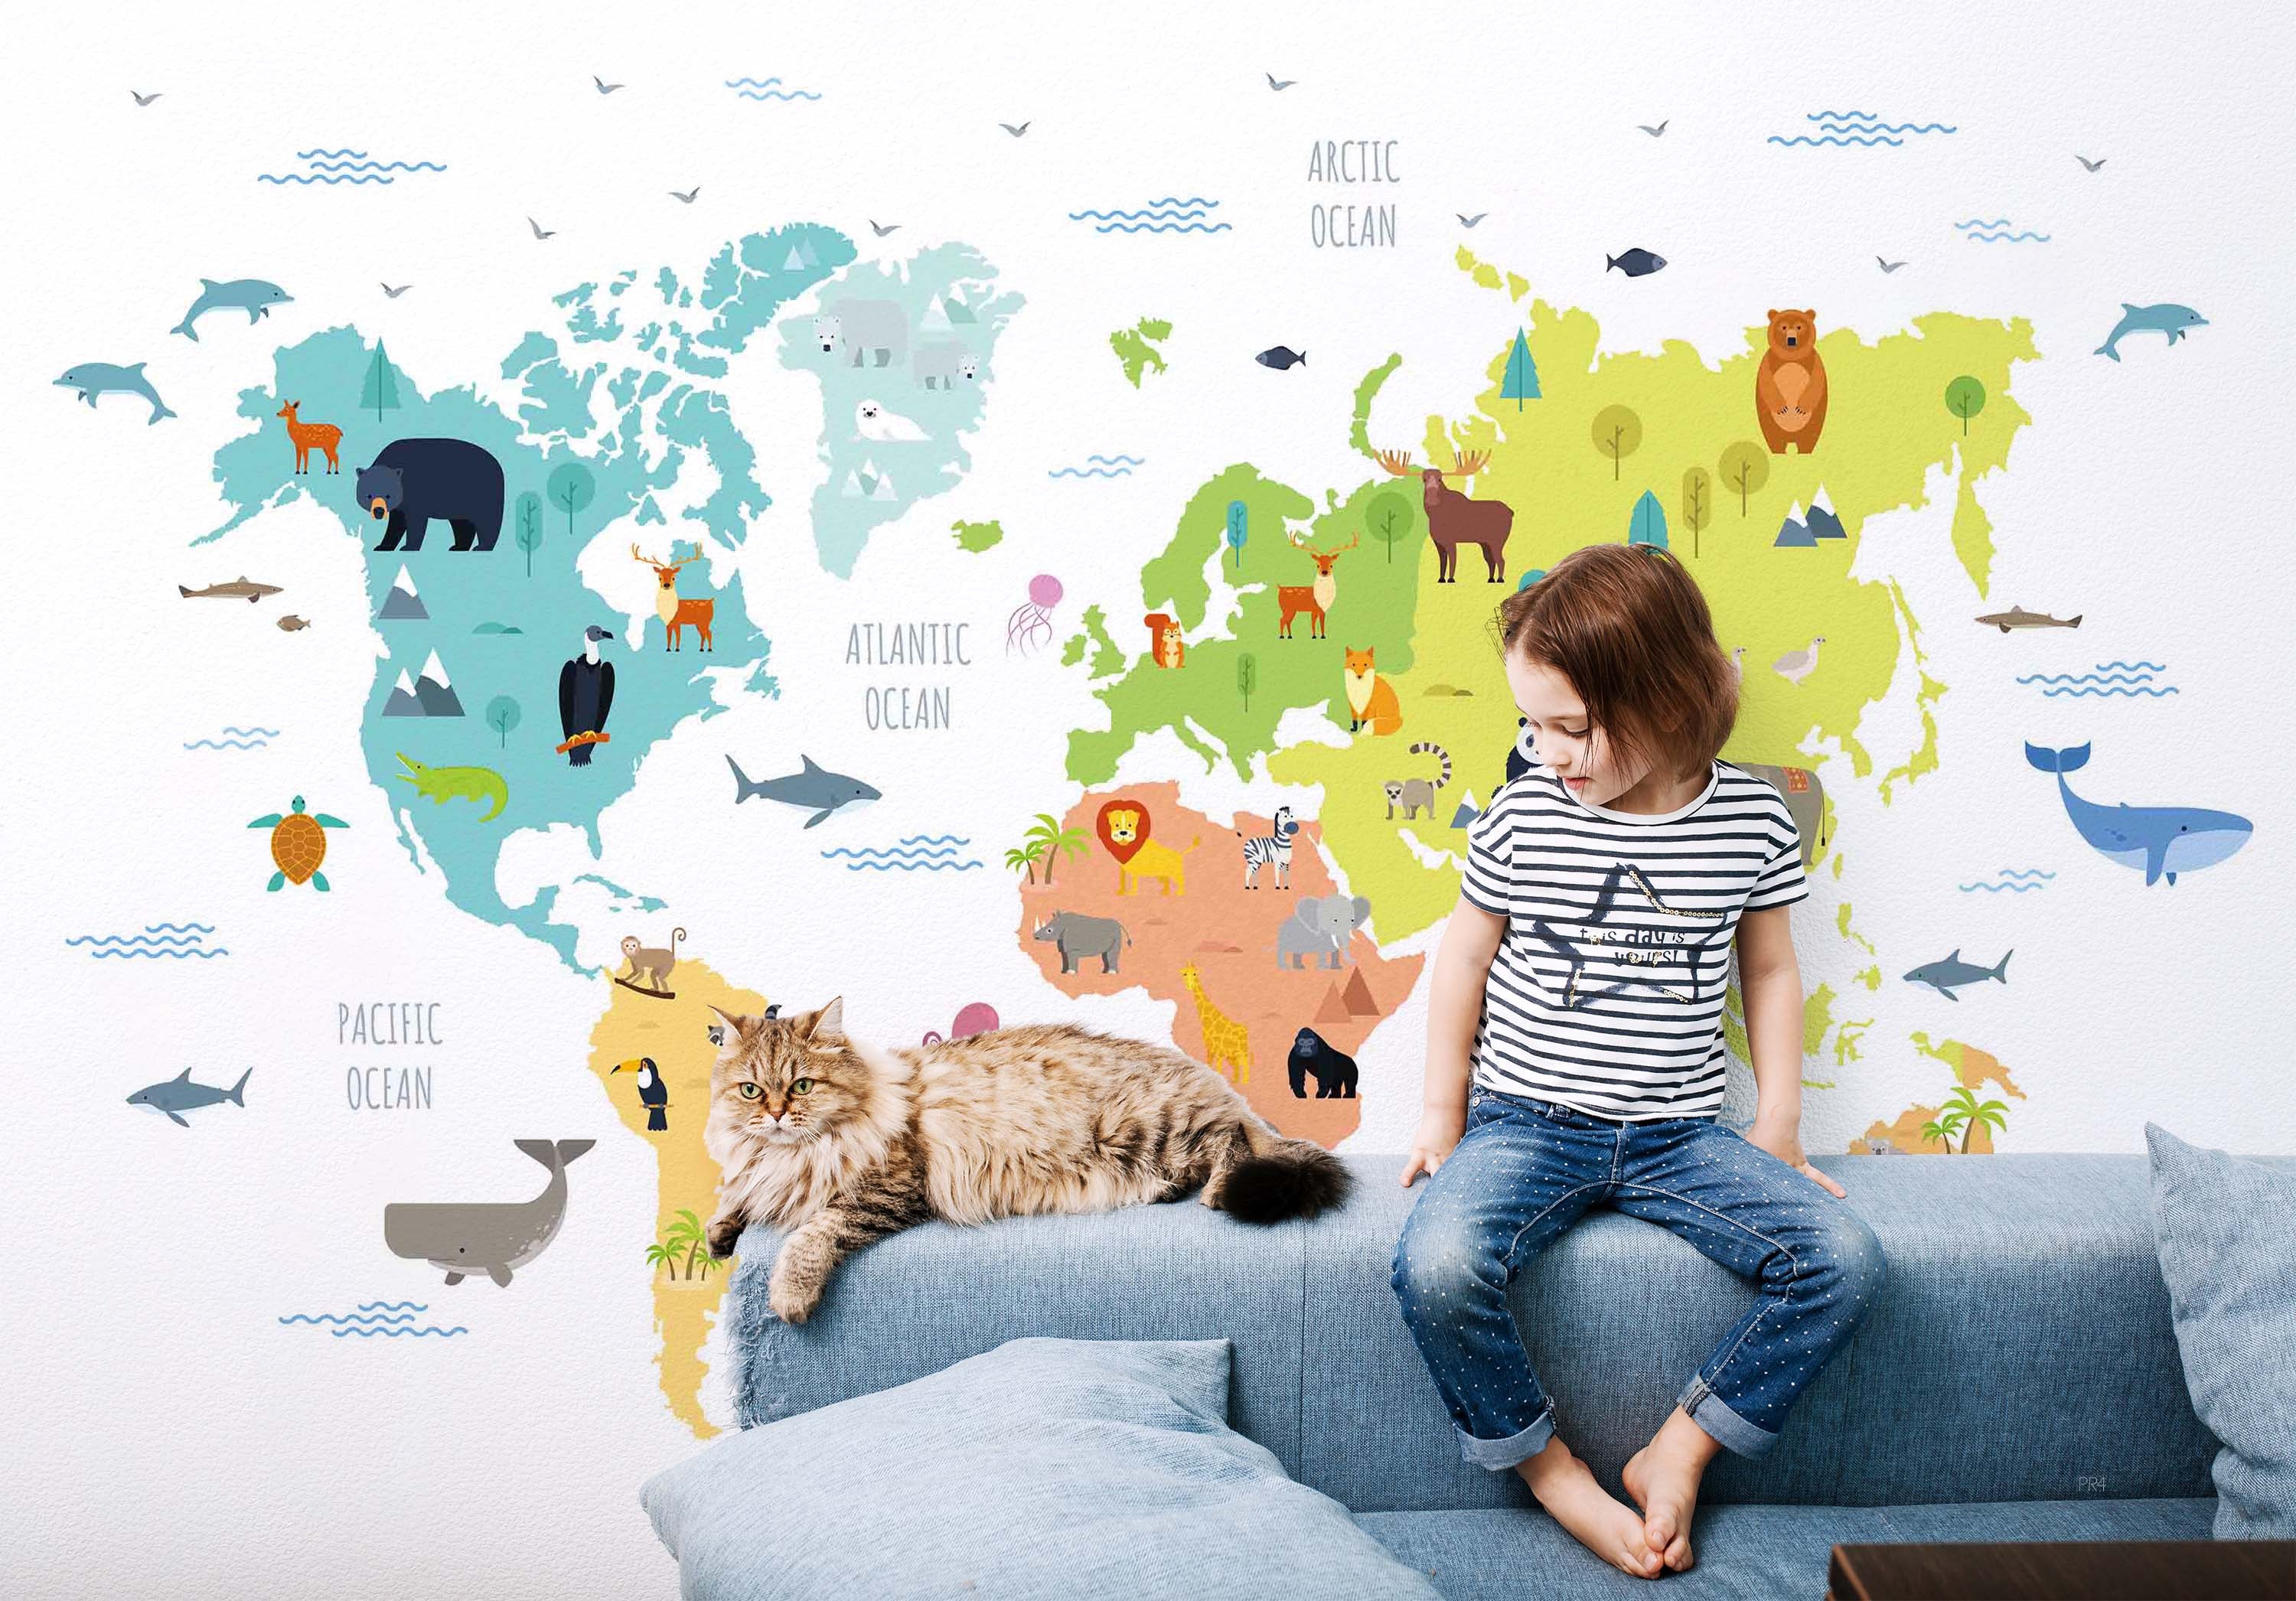 3D World Map Cartoon Animals Wall Mural Wallpaper GD 3995- Jess Art Decoration